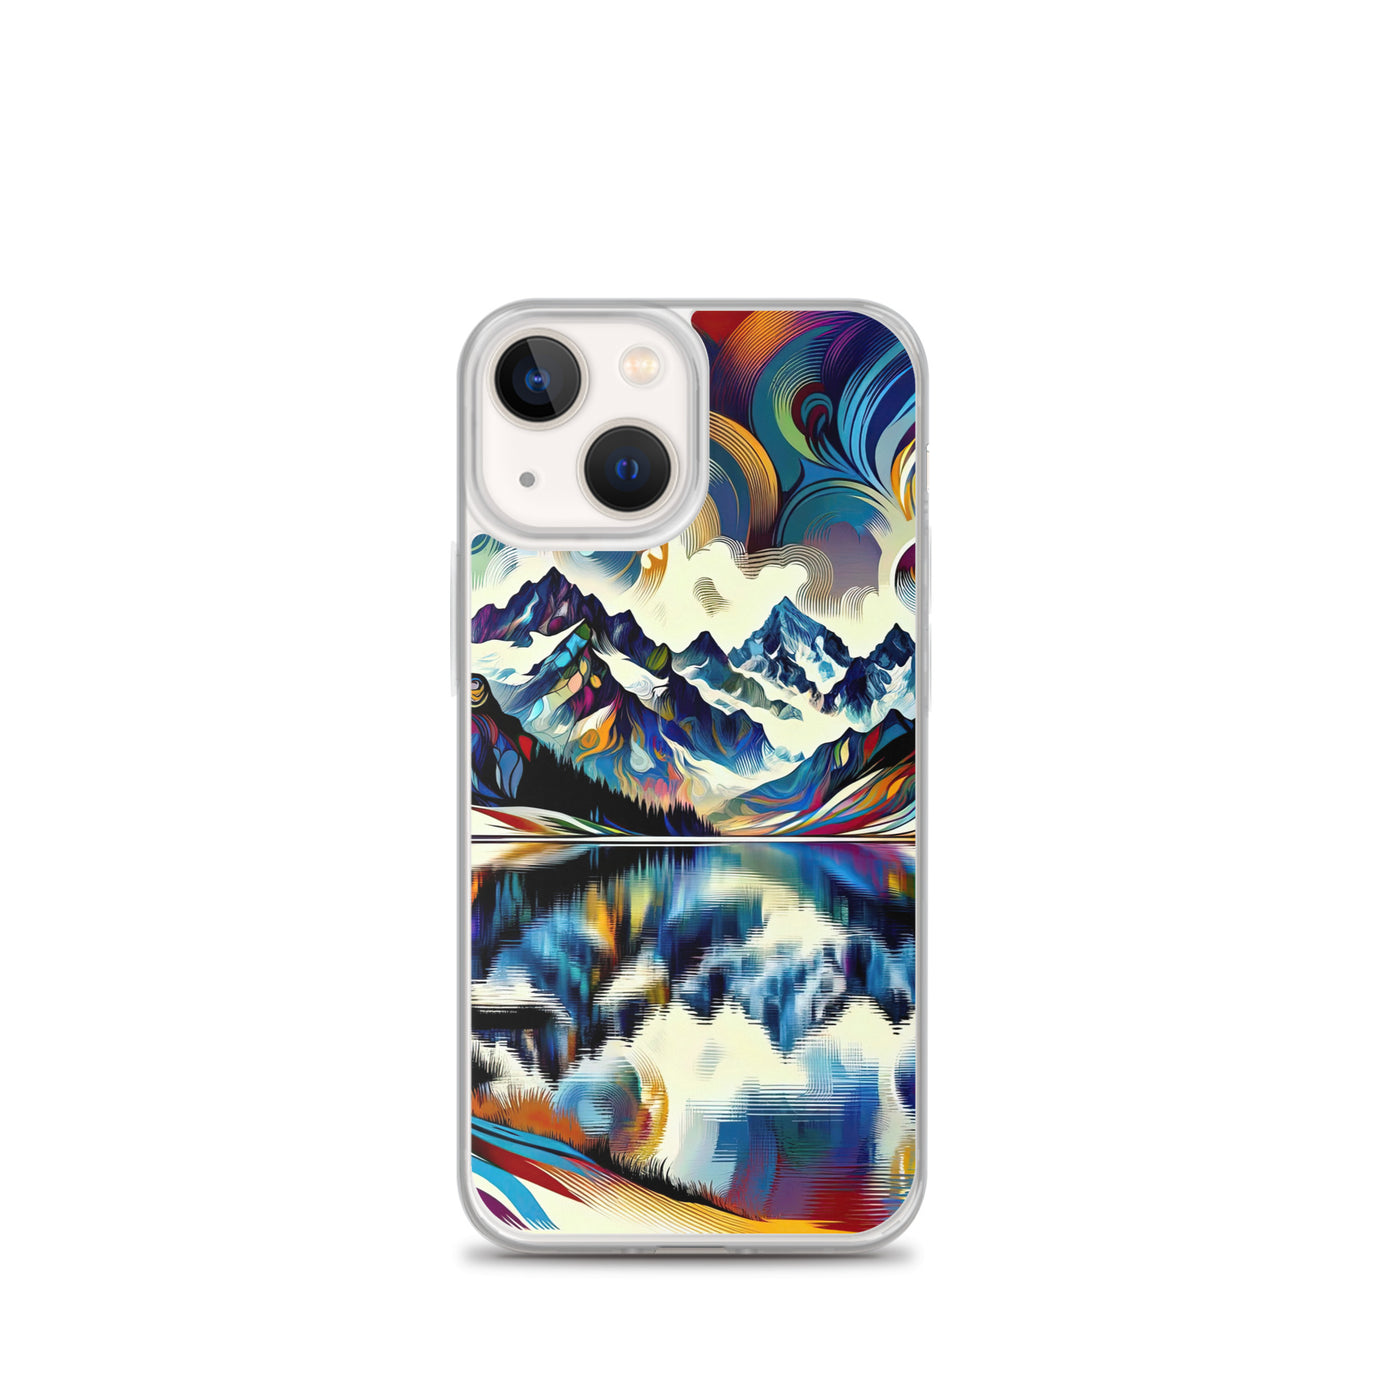 Alpensee im Zentrum eines abstrakt-expressionistischen Alpen-Kunstwerks - iPhone Schutzhülle (durchsichtig) berge xxx yyy zzz iPhone 13 mini